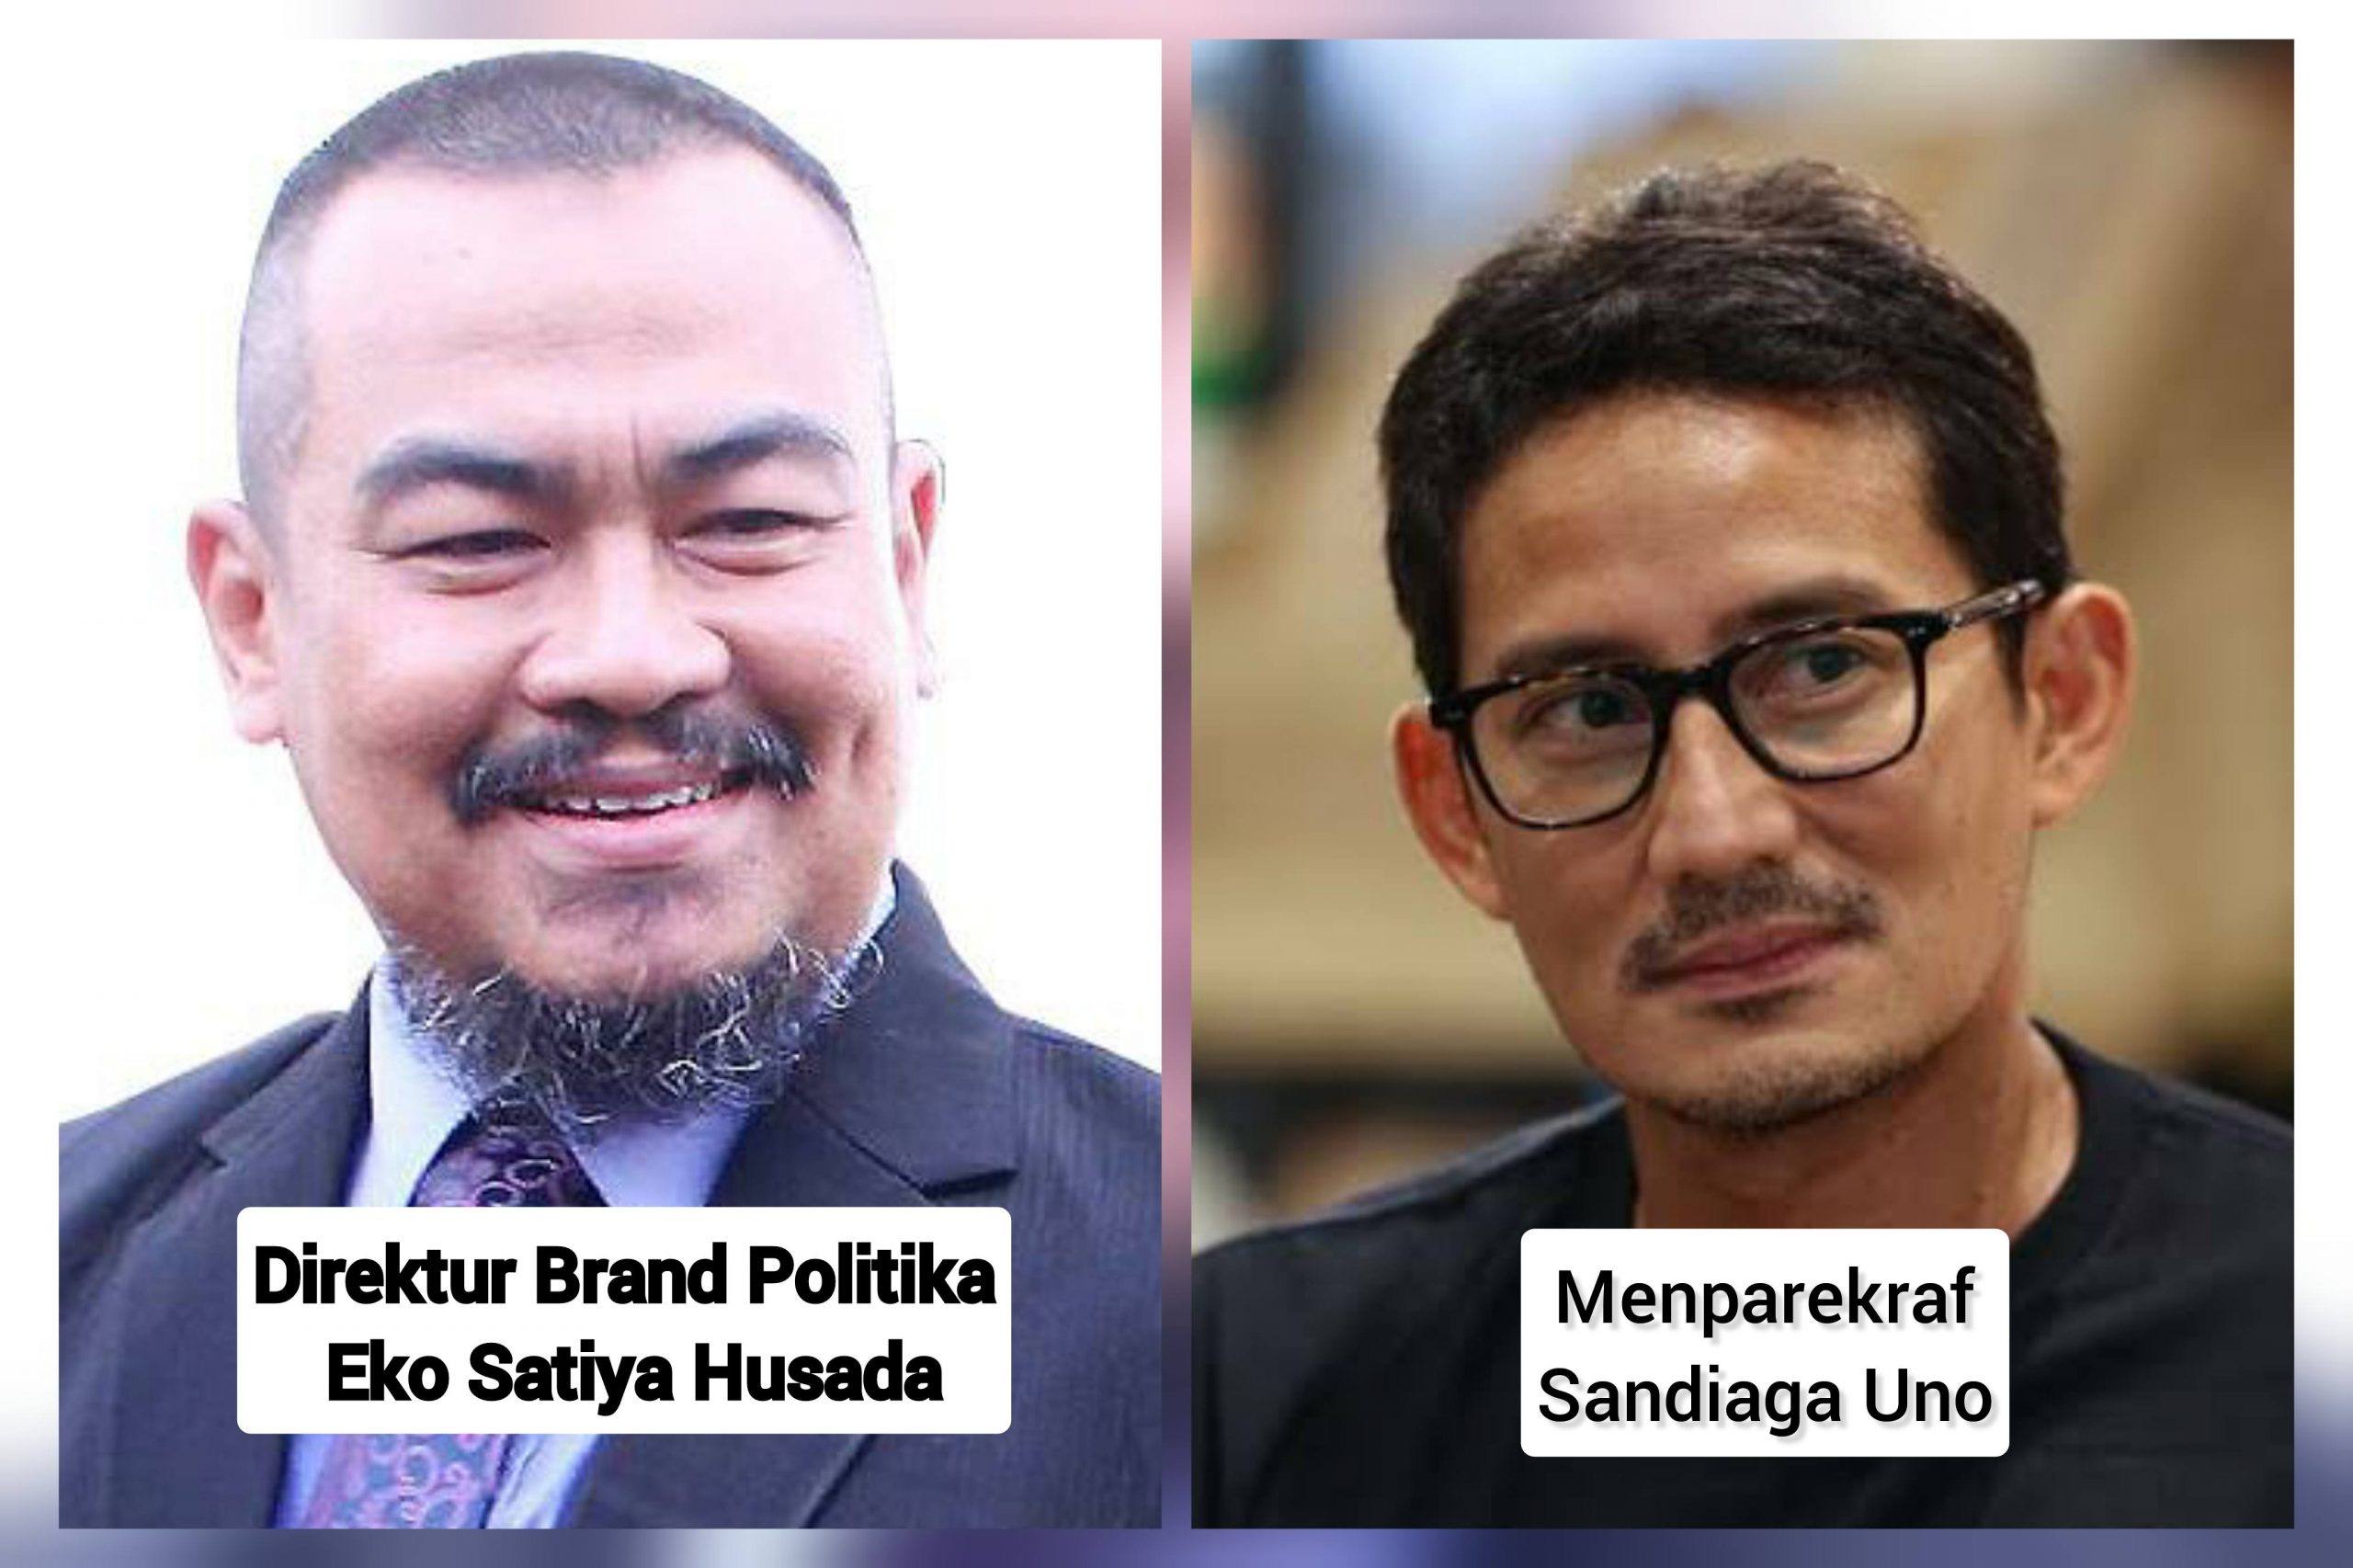 Brand Politika: Sandiaga Uno Cukup Cawapres Saja